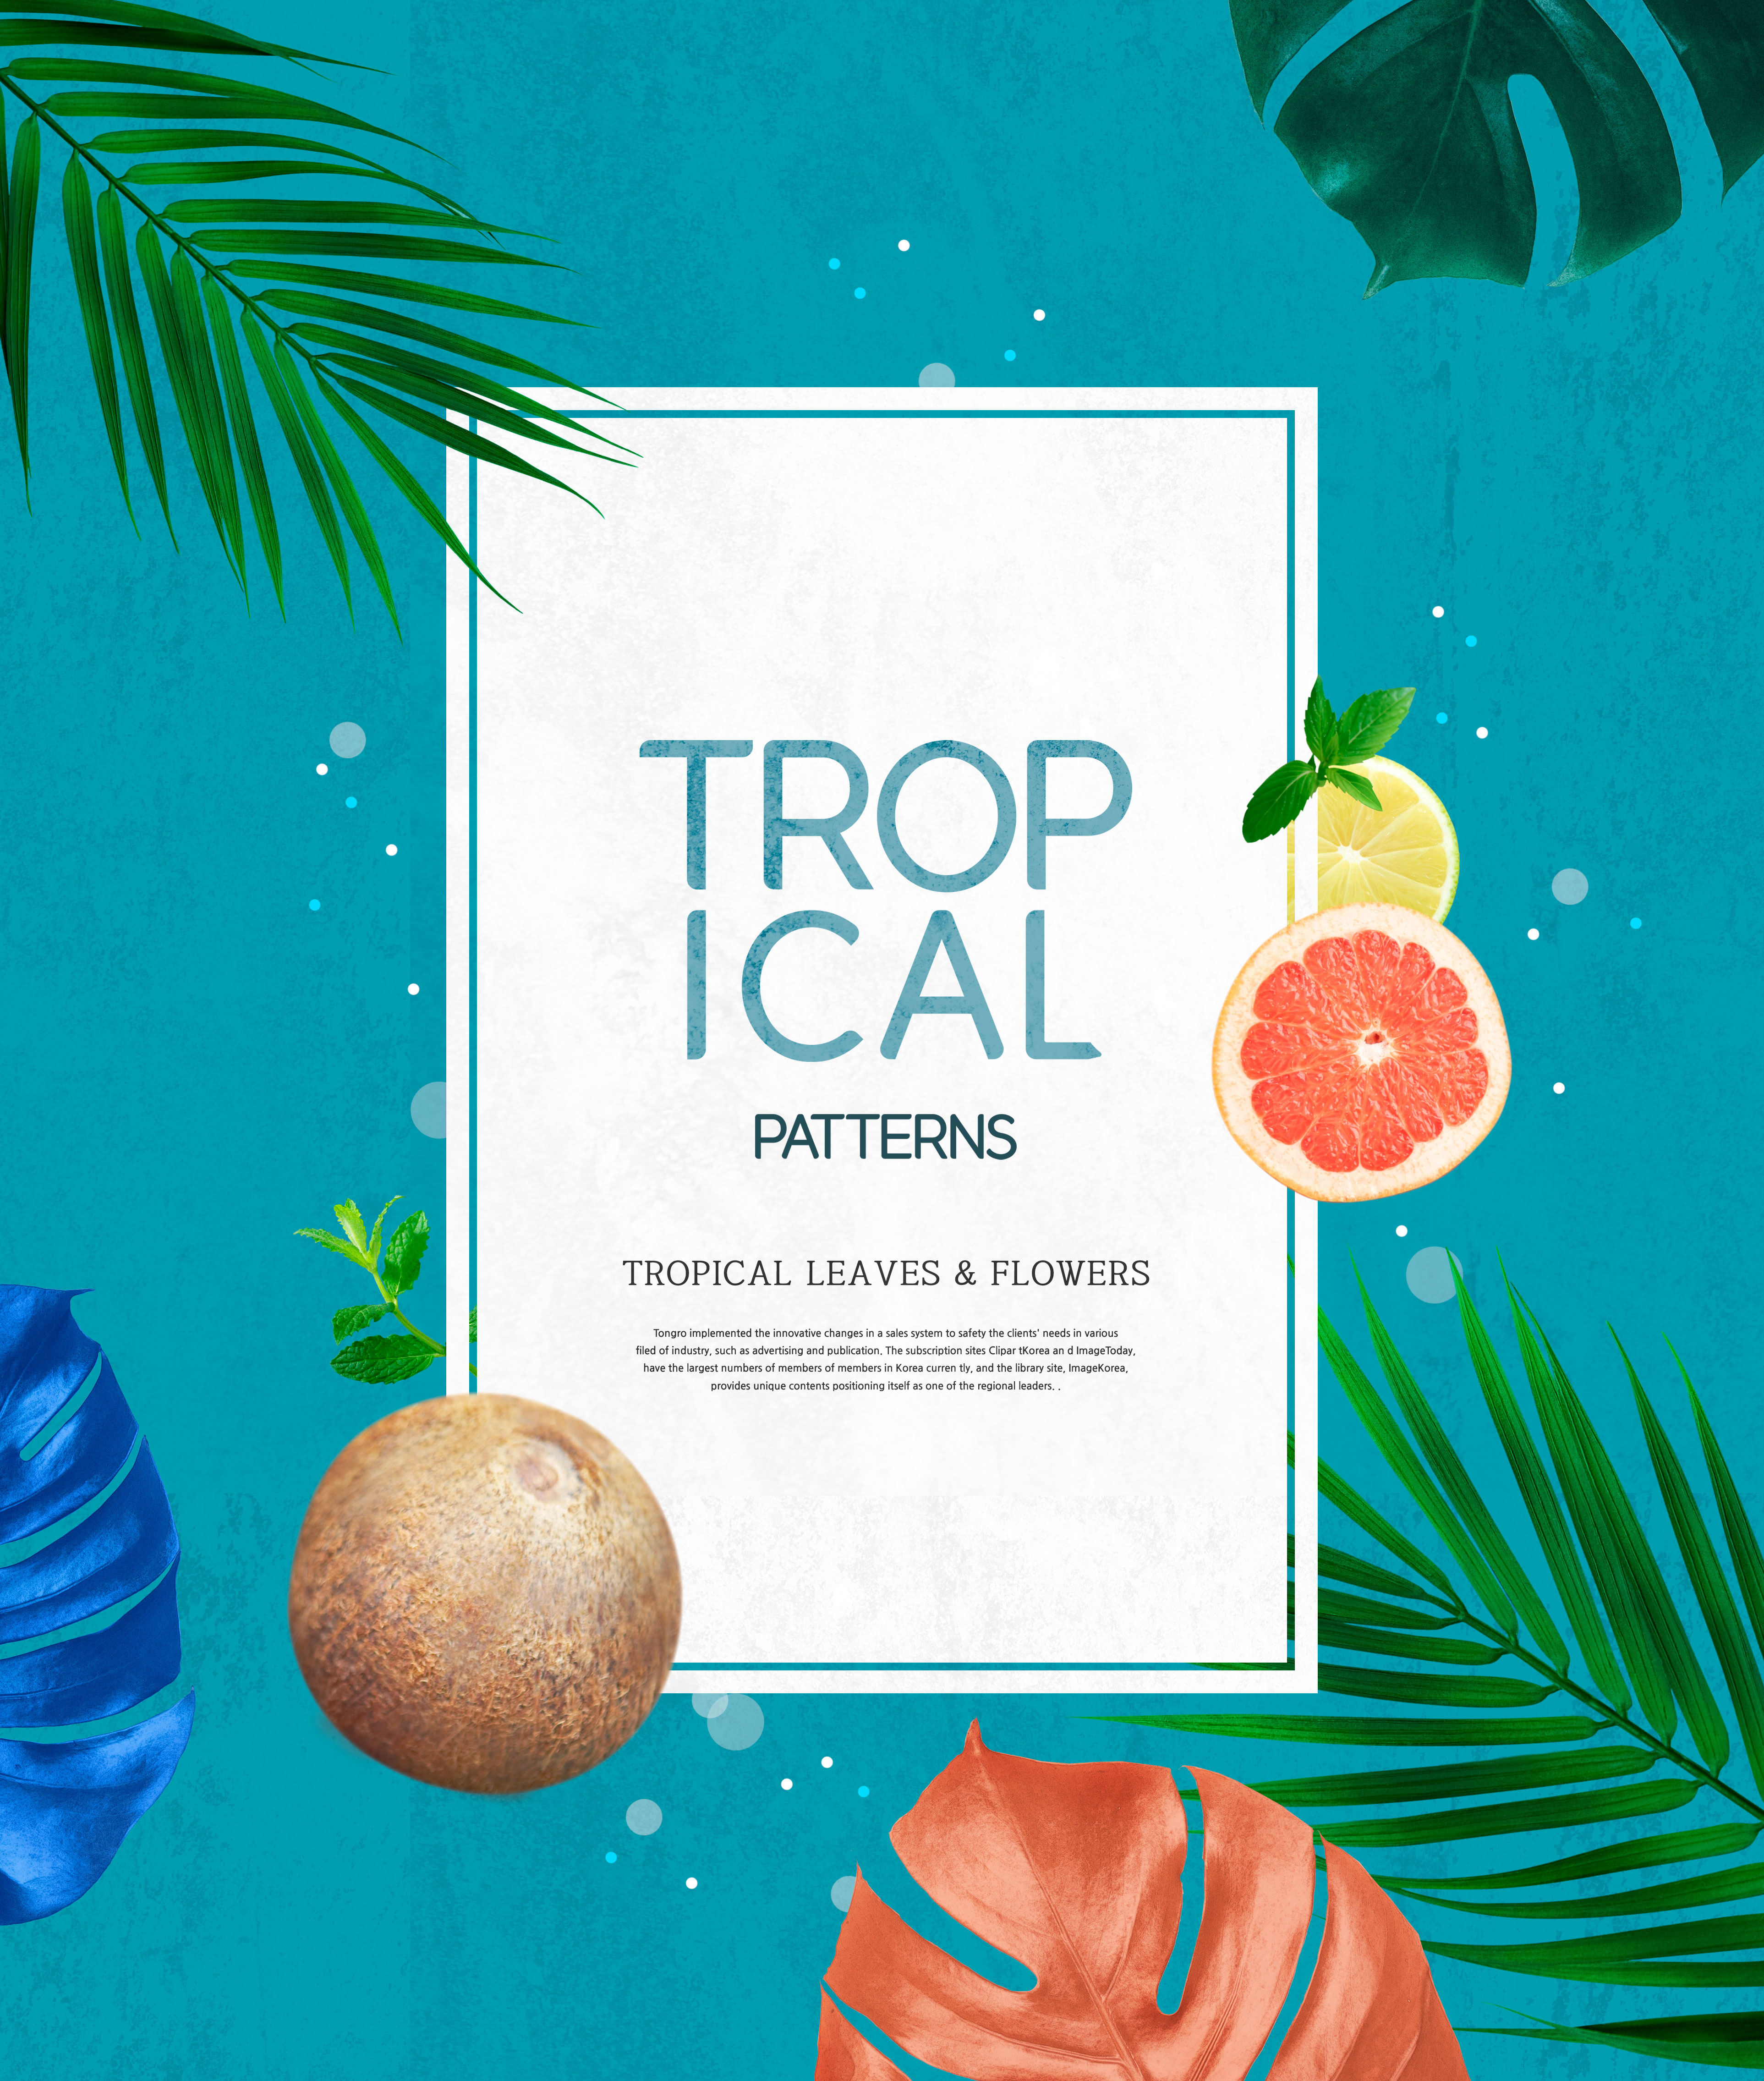 热带主题叶子&花卉图案海报设计素材插图(1)